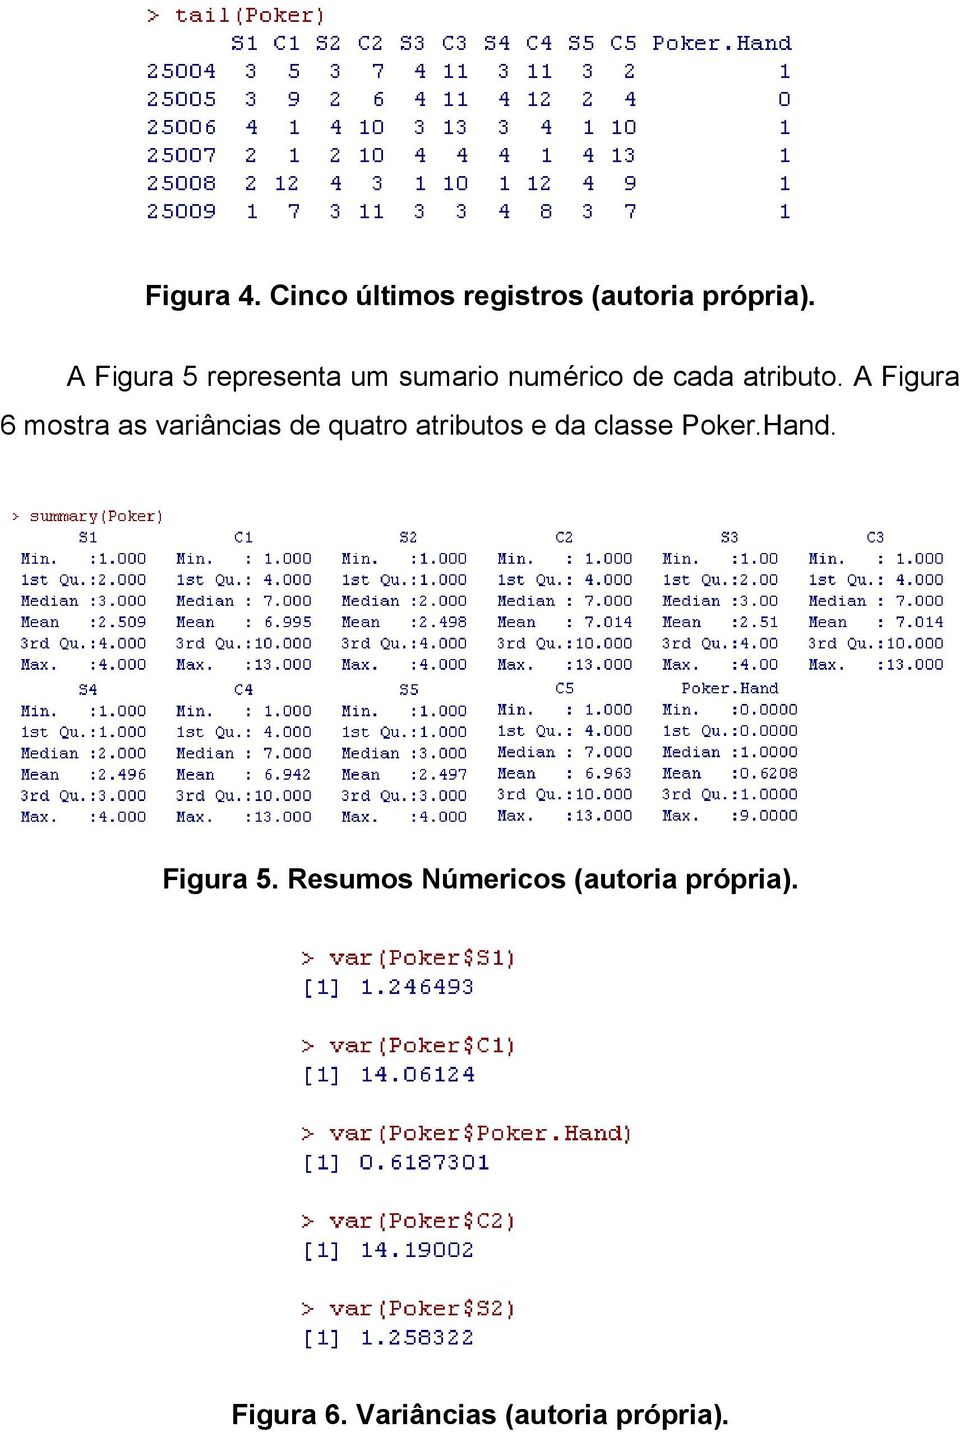 A Figura 6 mostra as variâncias de quatro atributos e da classe